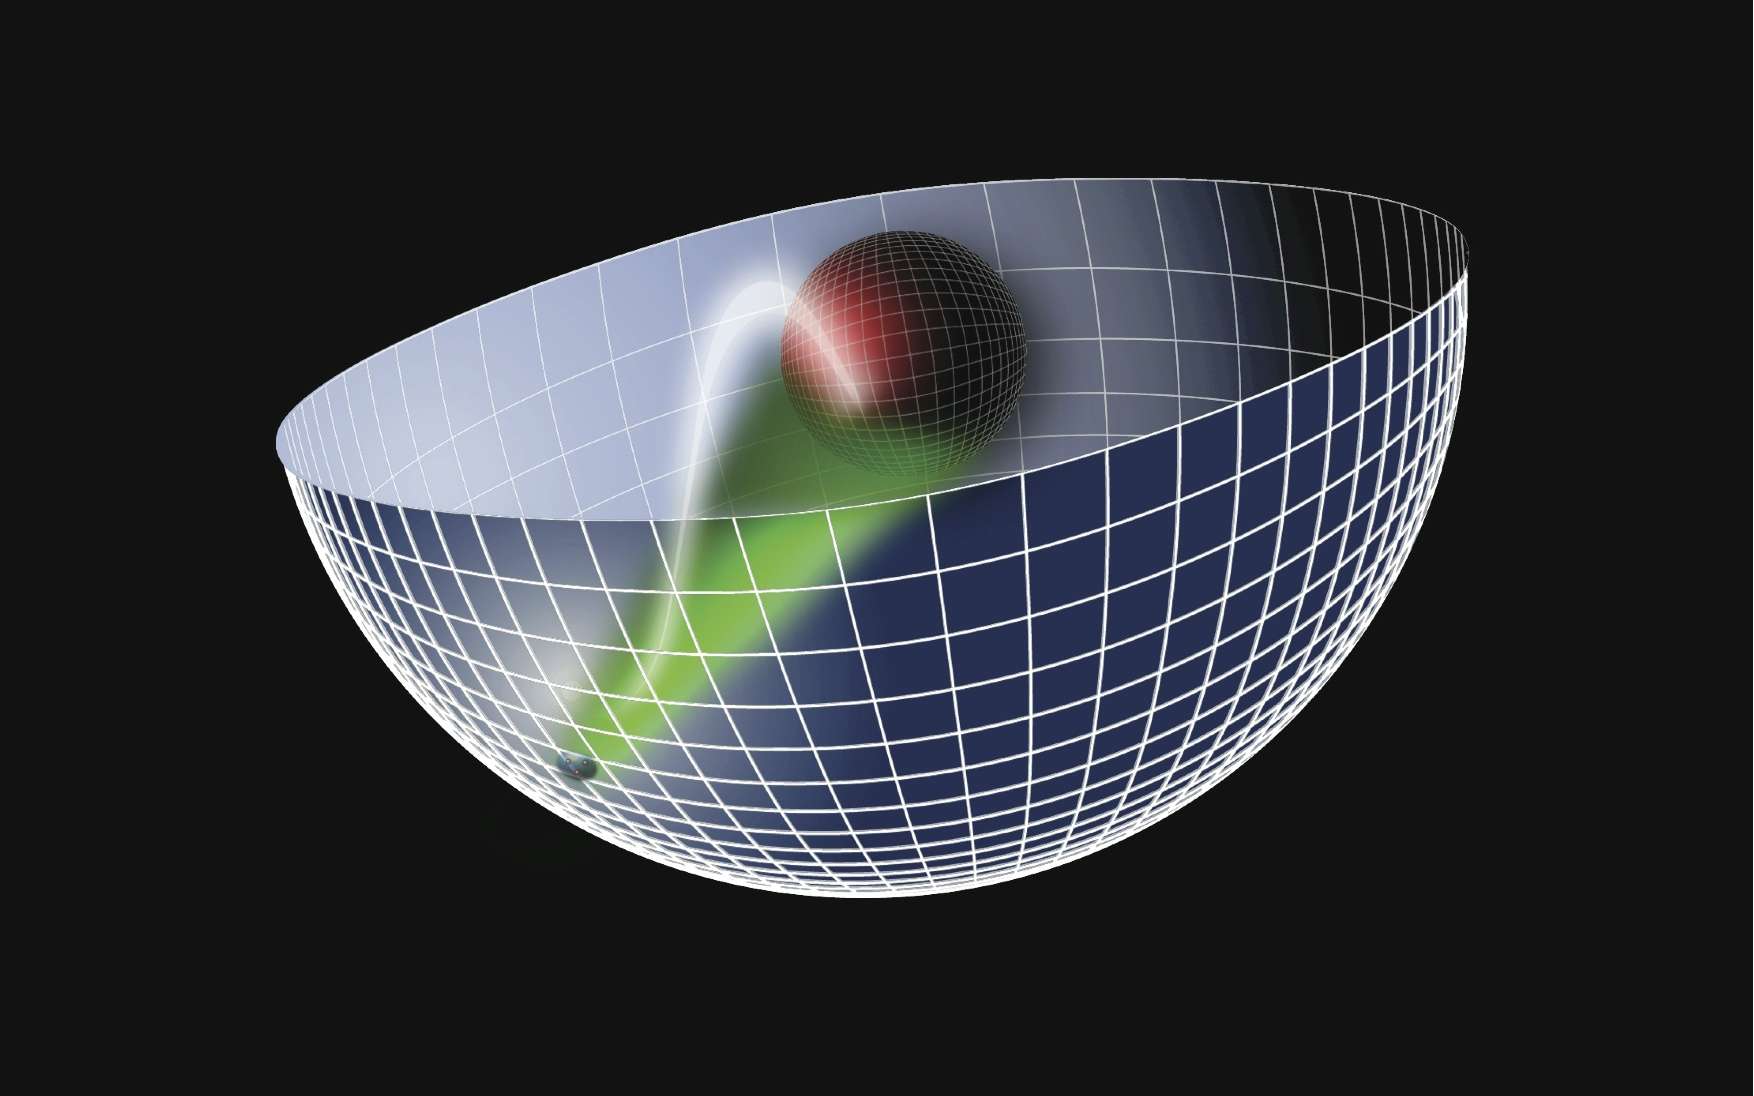 Représentation d'artiste de la conjecture de Maldacena, encore appelée correspondance AdS/CFT. Elle relie la théorie des cordes dans un espace-temps anti-de Sitter à cinq dimensions (plus cinq autres dimensions spatiales supplémentaires compactifiées, par exemple sous forme de sphère) possédant une frontière spatiale plate. Un trou noir dans cet espace-temps anti-de Sitter (la sphère rouge au centre du schéma) est en correspondance avec une sorte de gaz de quarks-gluons existant dans un espace-temps plat sur cette frontière (les trois quarks sur la surface du schéma). Ce qui se passe dans un espace-temps courbe en cinq dimensions décrit par la théorie des cordes serait équivalent à ce qui se déroule dans un espace-temps plat à quatre dimensions contenant des champs de Yang-Mills analogues à ceux de la chromodynamique quantique. On retrouve l'idée d'hologramme avec un objet physique en d dimensions, que l'on peut en réalité décrire comme un objet à d-1 dimensions. © Stan Brodsky